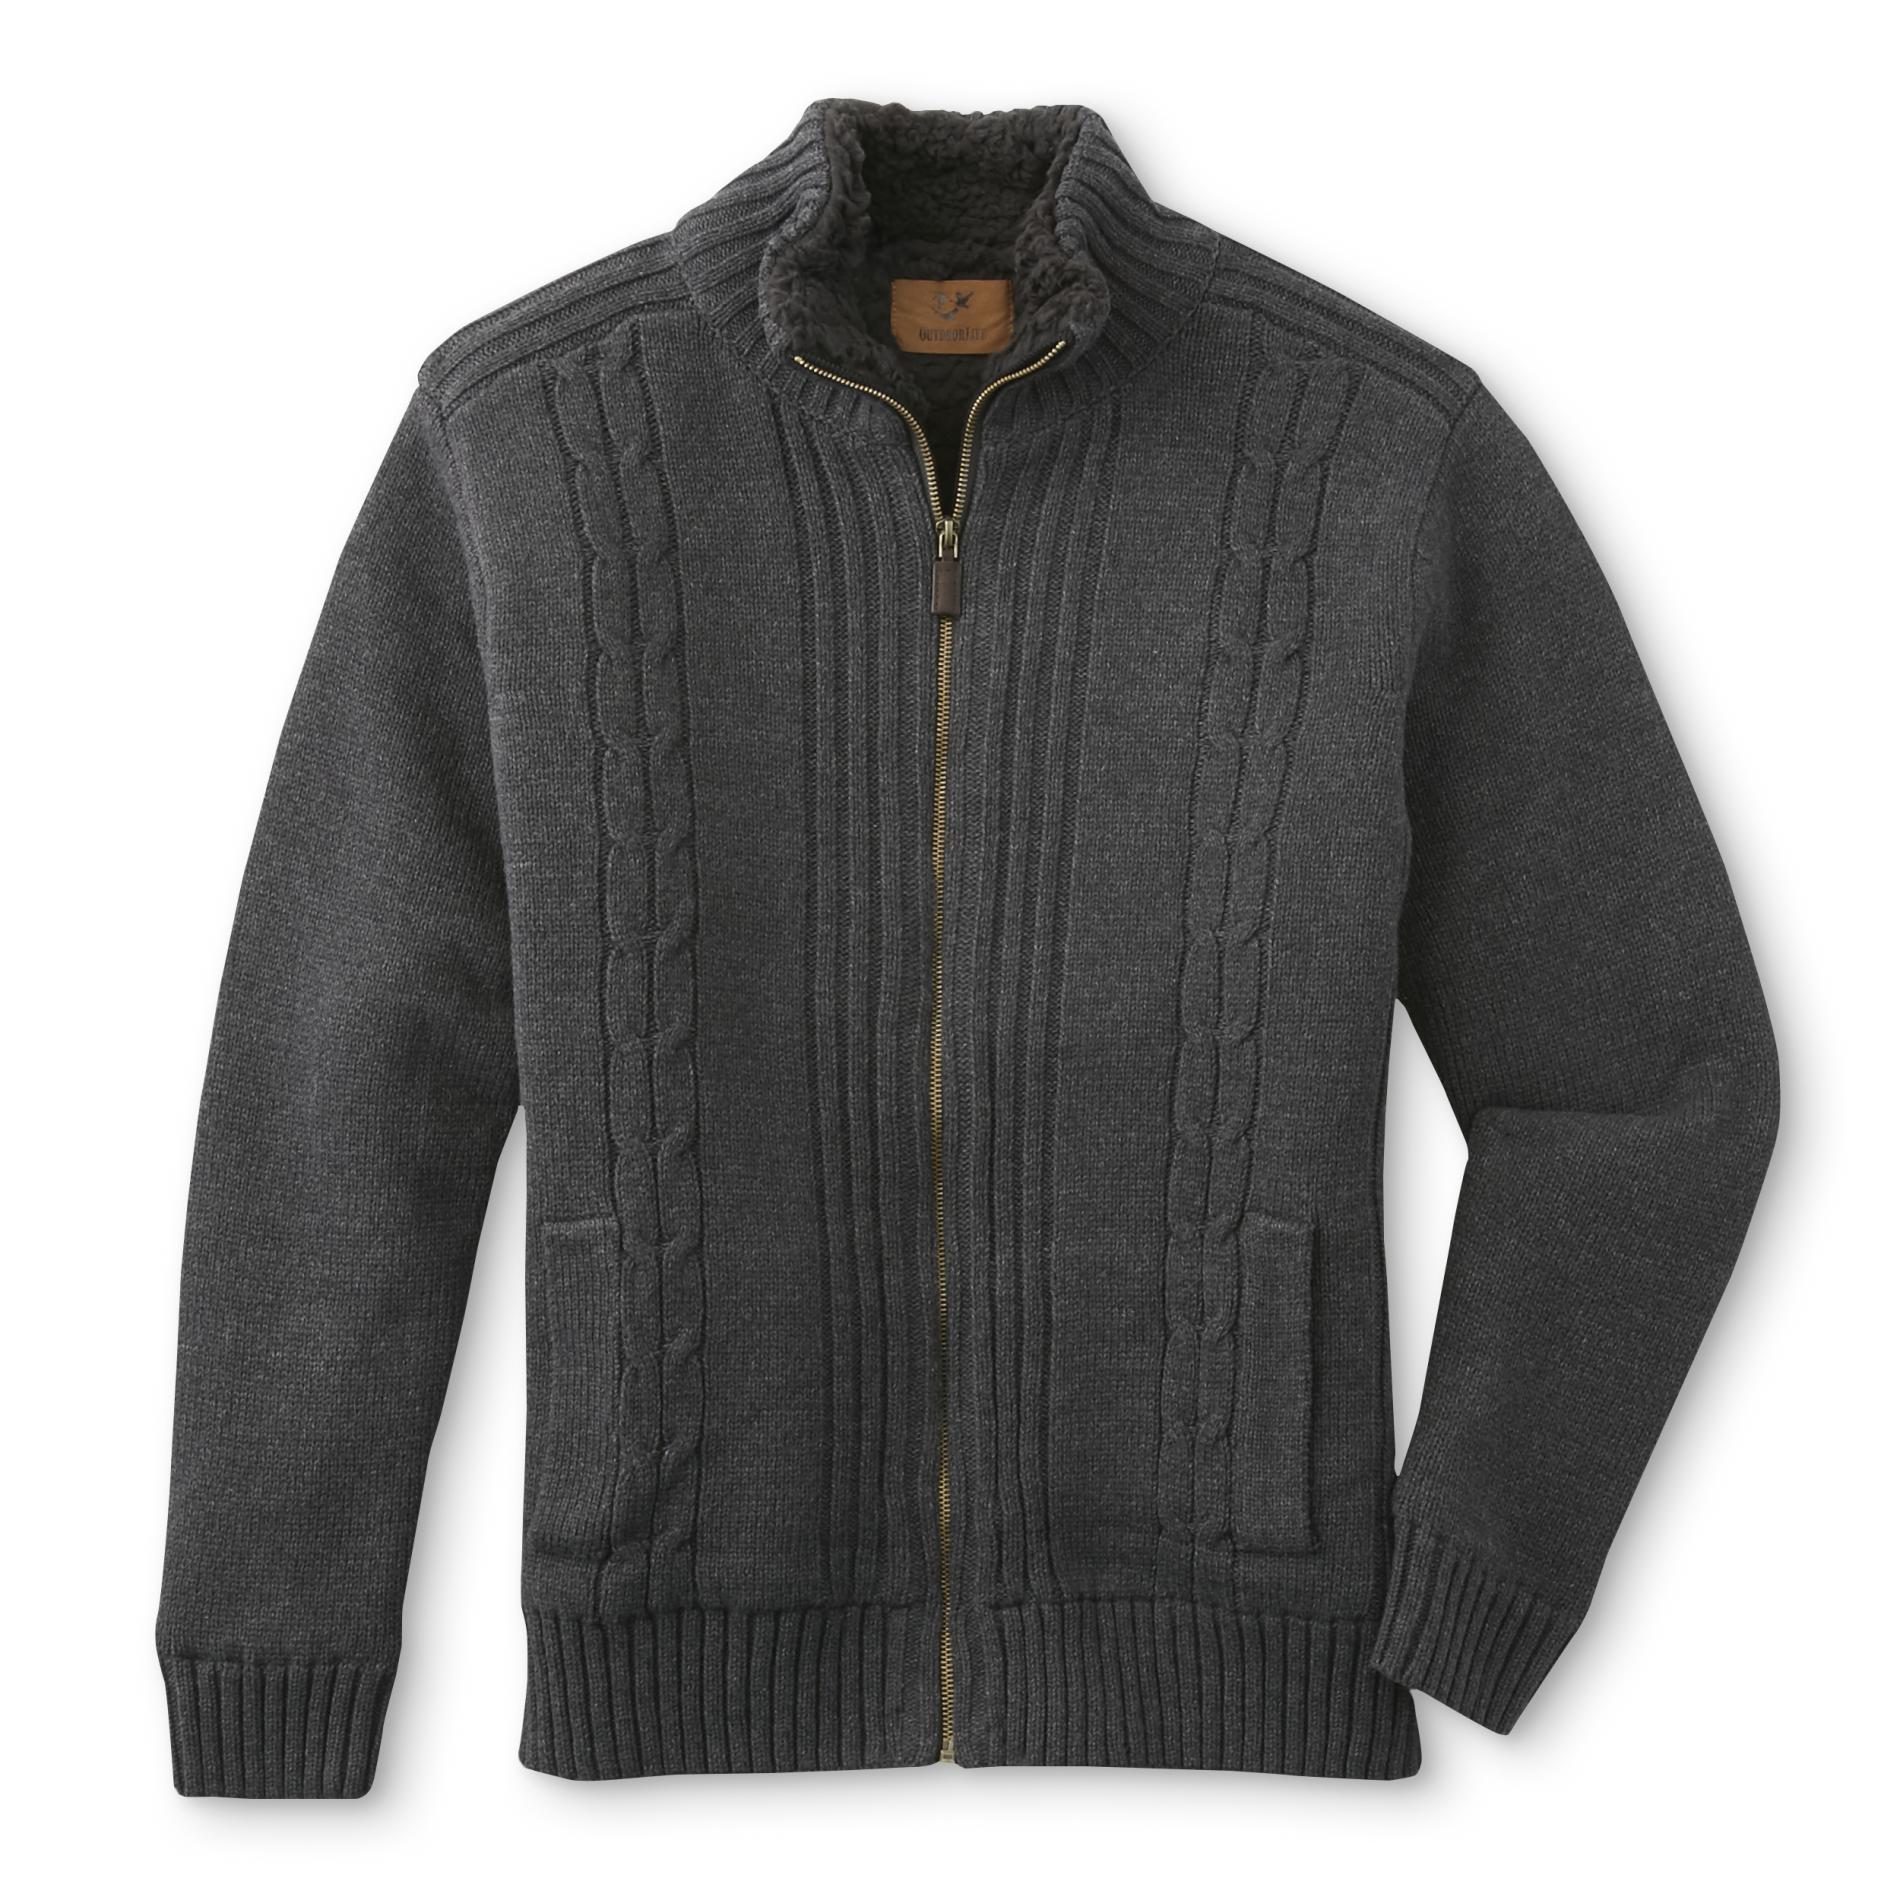 Outdoor Life Men's Fleece-Lined Sweater Jacket | Shop Your Way: Online ...